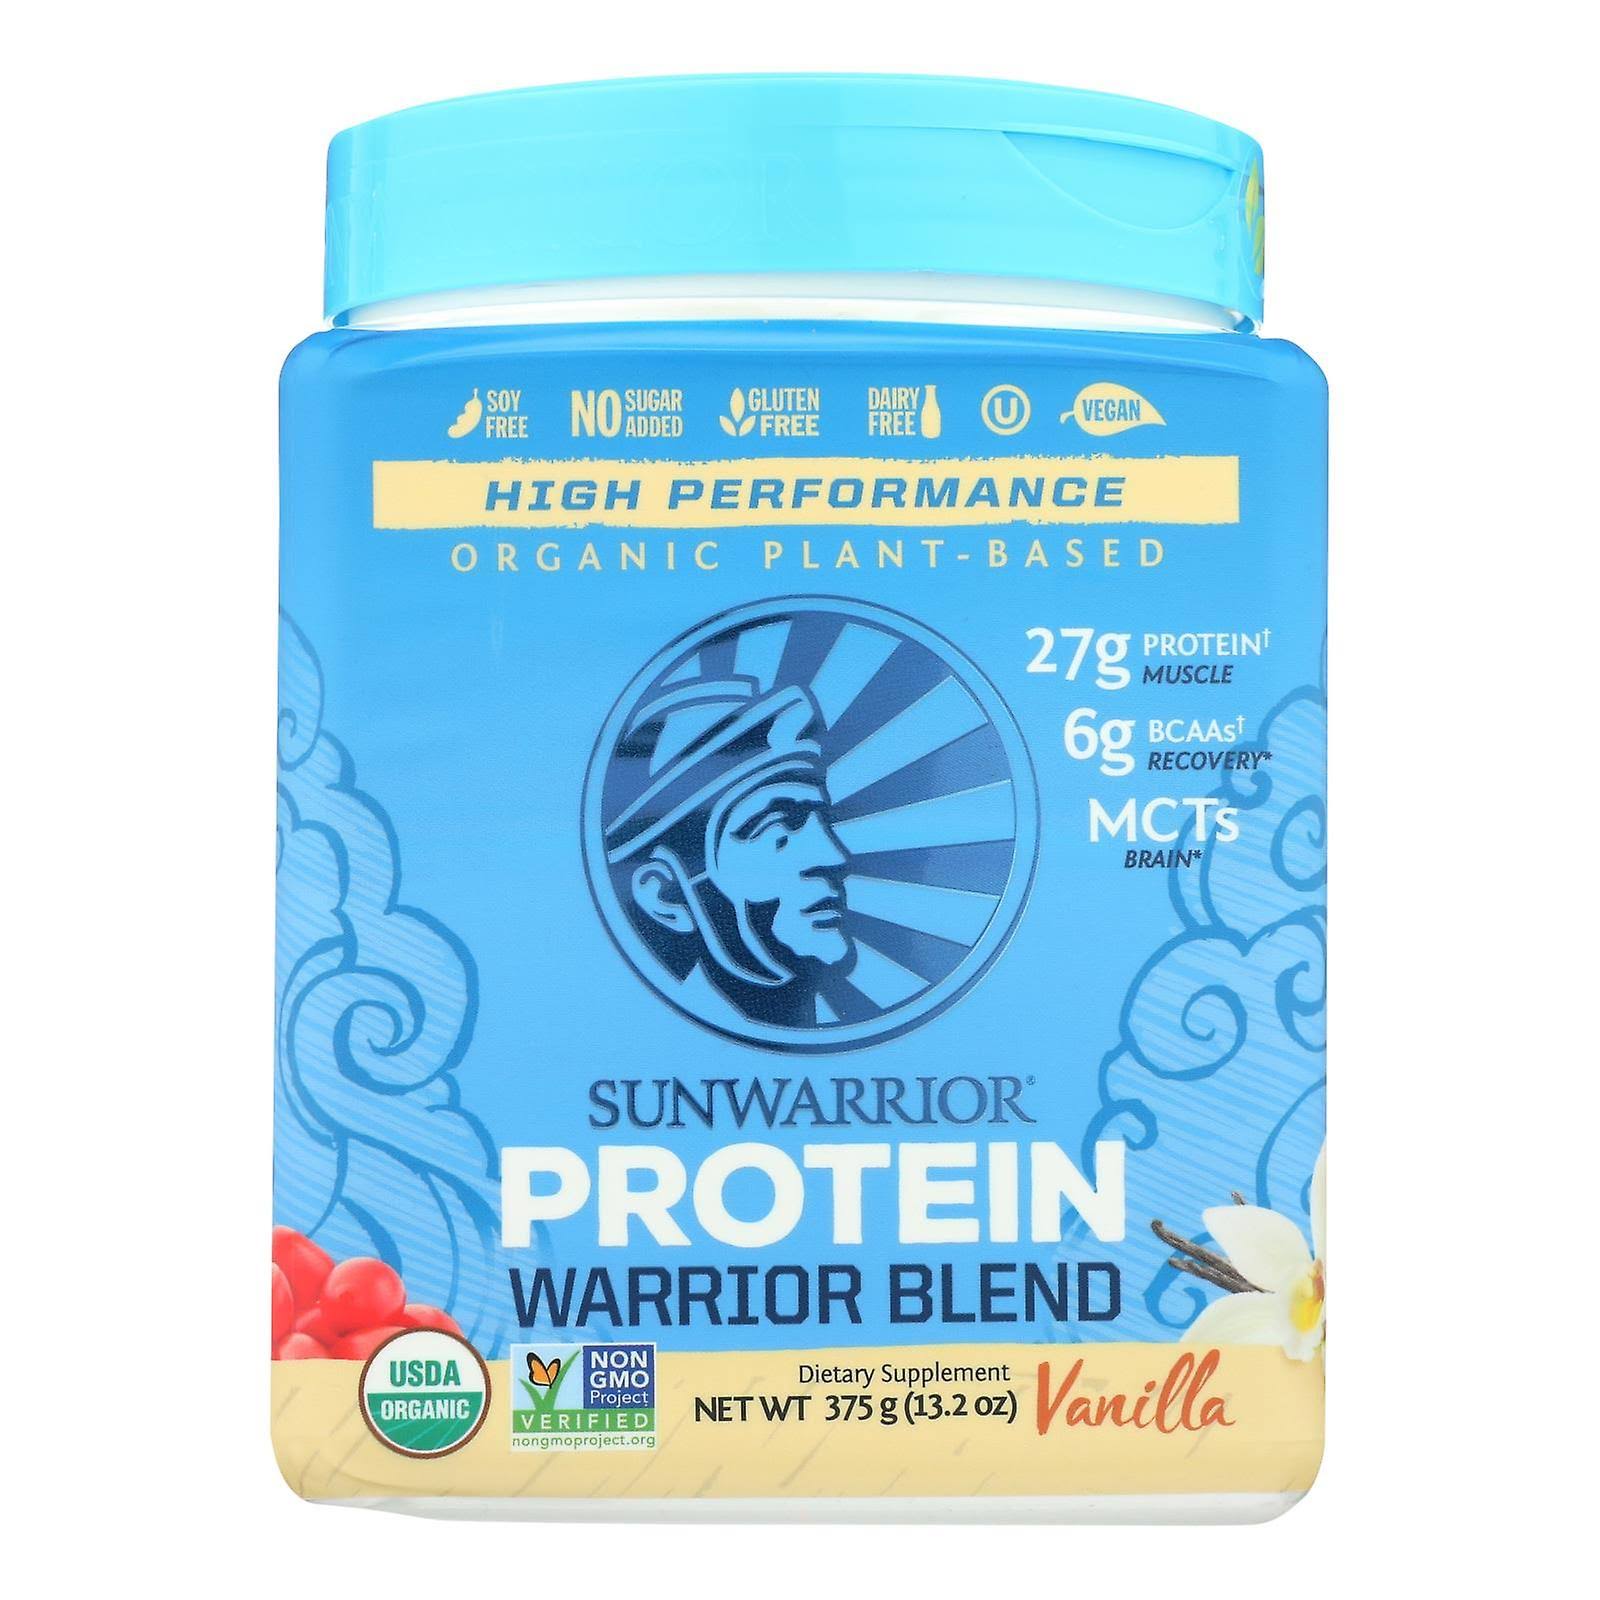 Sunwarrior Warrior Blend Protein - Vanilla - 375 g (13.2 oz)